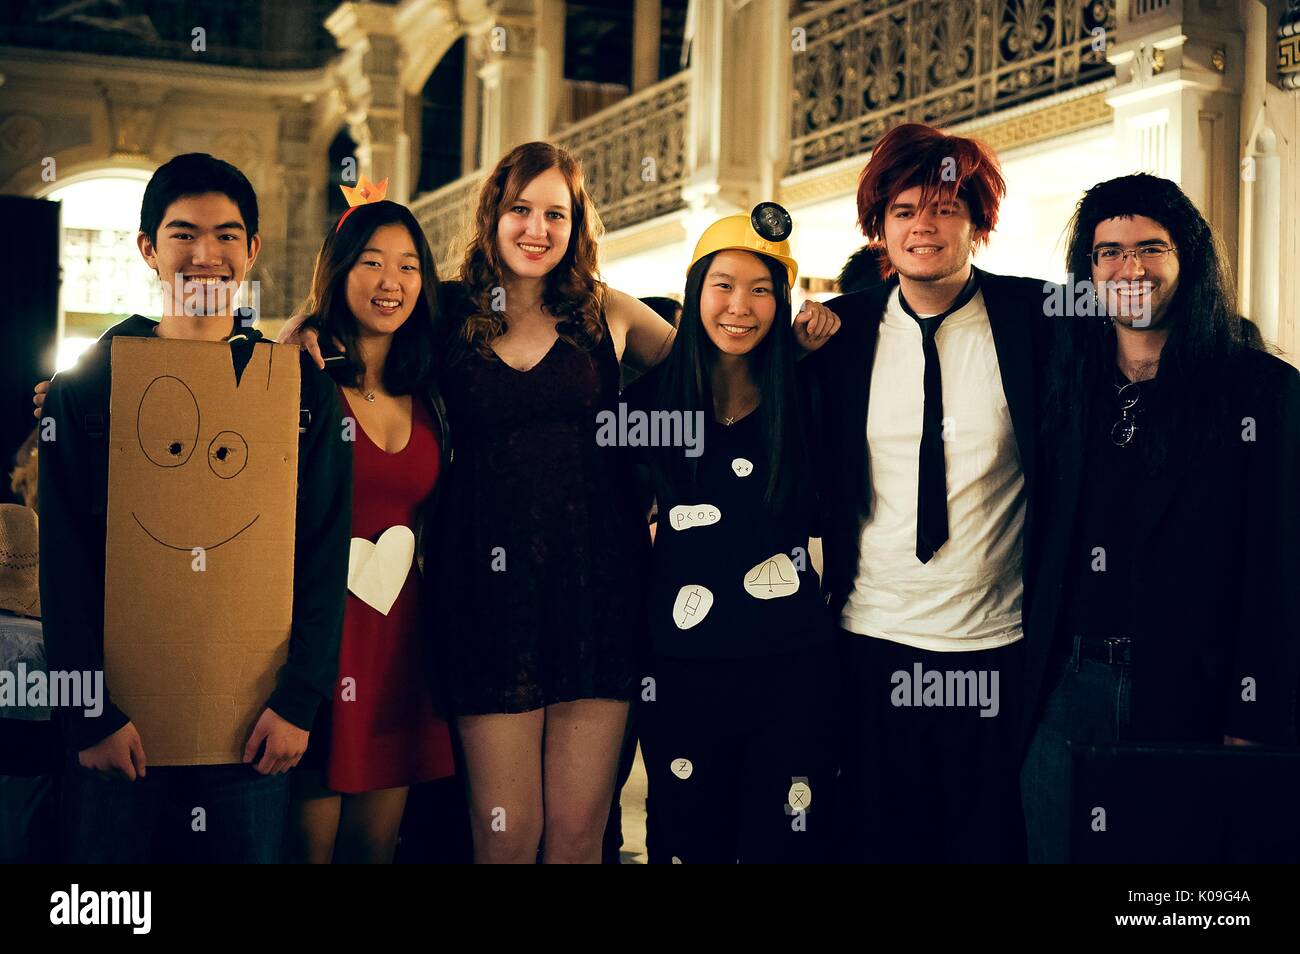 Un groupe d'étudiants posent pour une photo, tous les élèves sont dans divers costumes, Halloween à la Johns Hopkins University's George Peabody Library, 2015. Avec la permission de Eric Chen. Banque D'Images